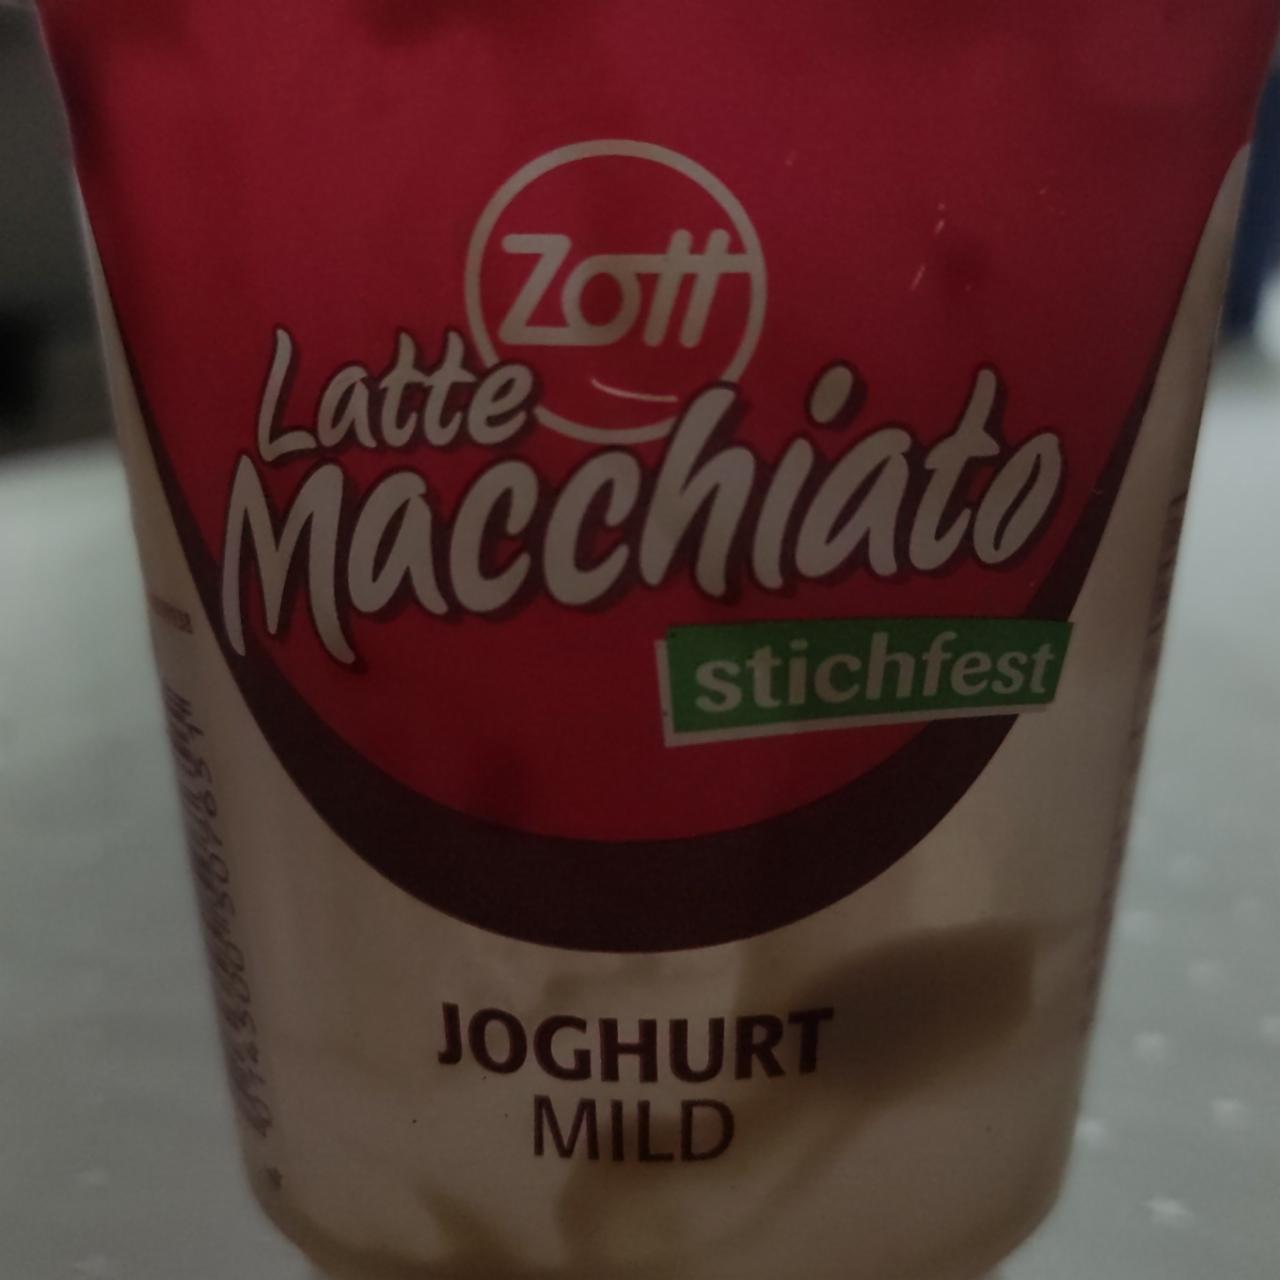 Фото - Йогурт Latte macchiato Joghurt mild Zott